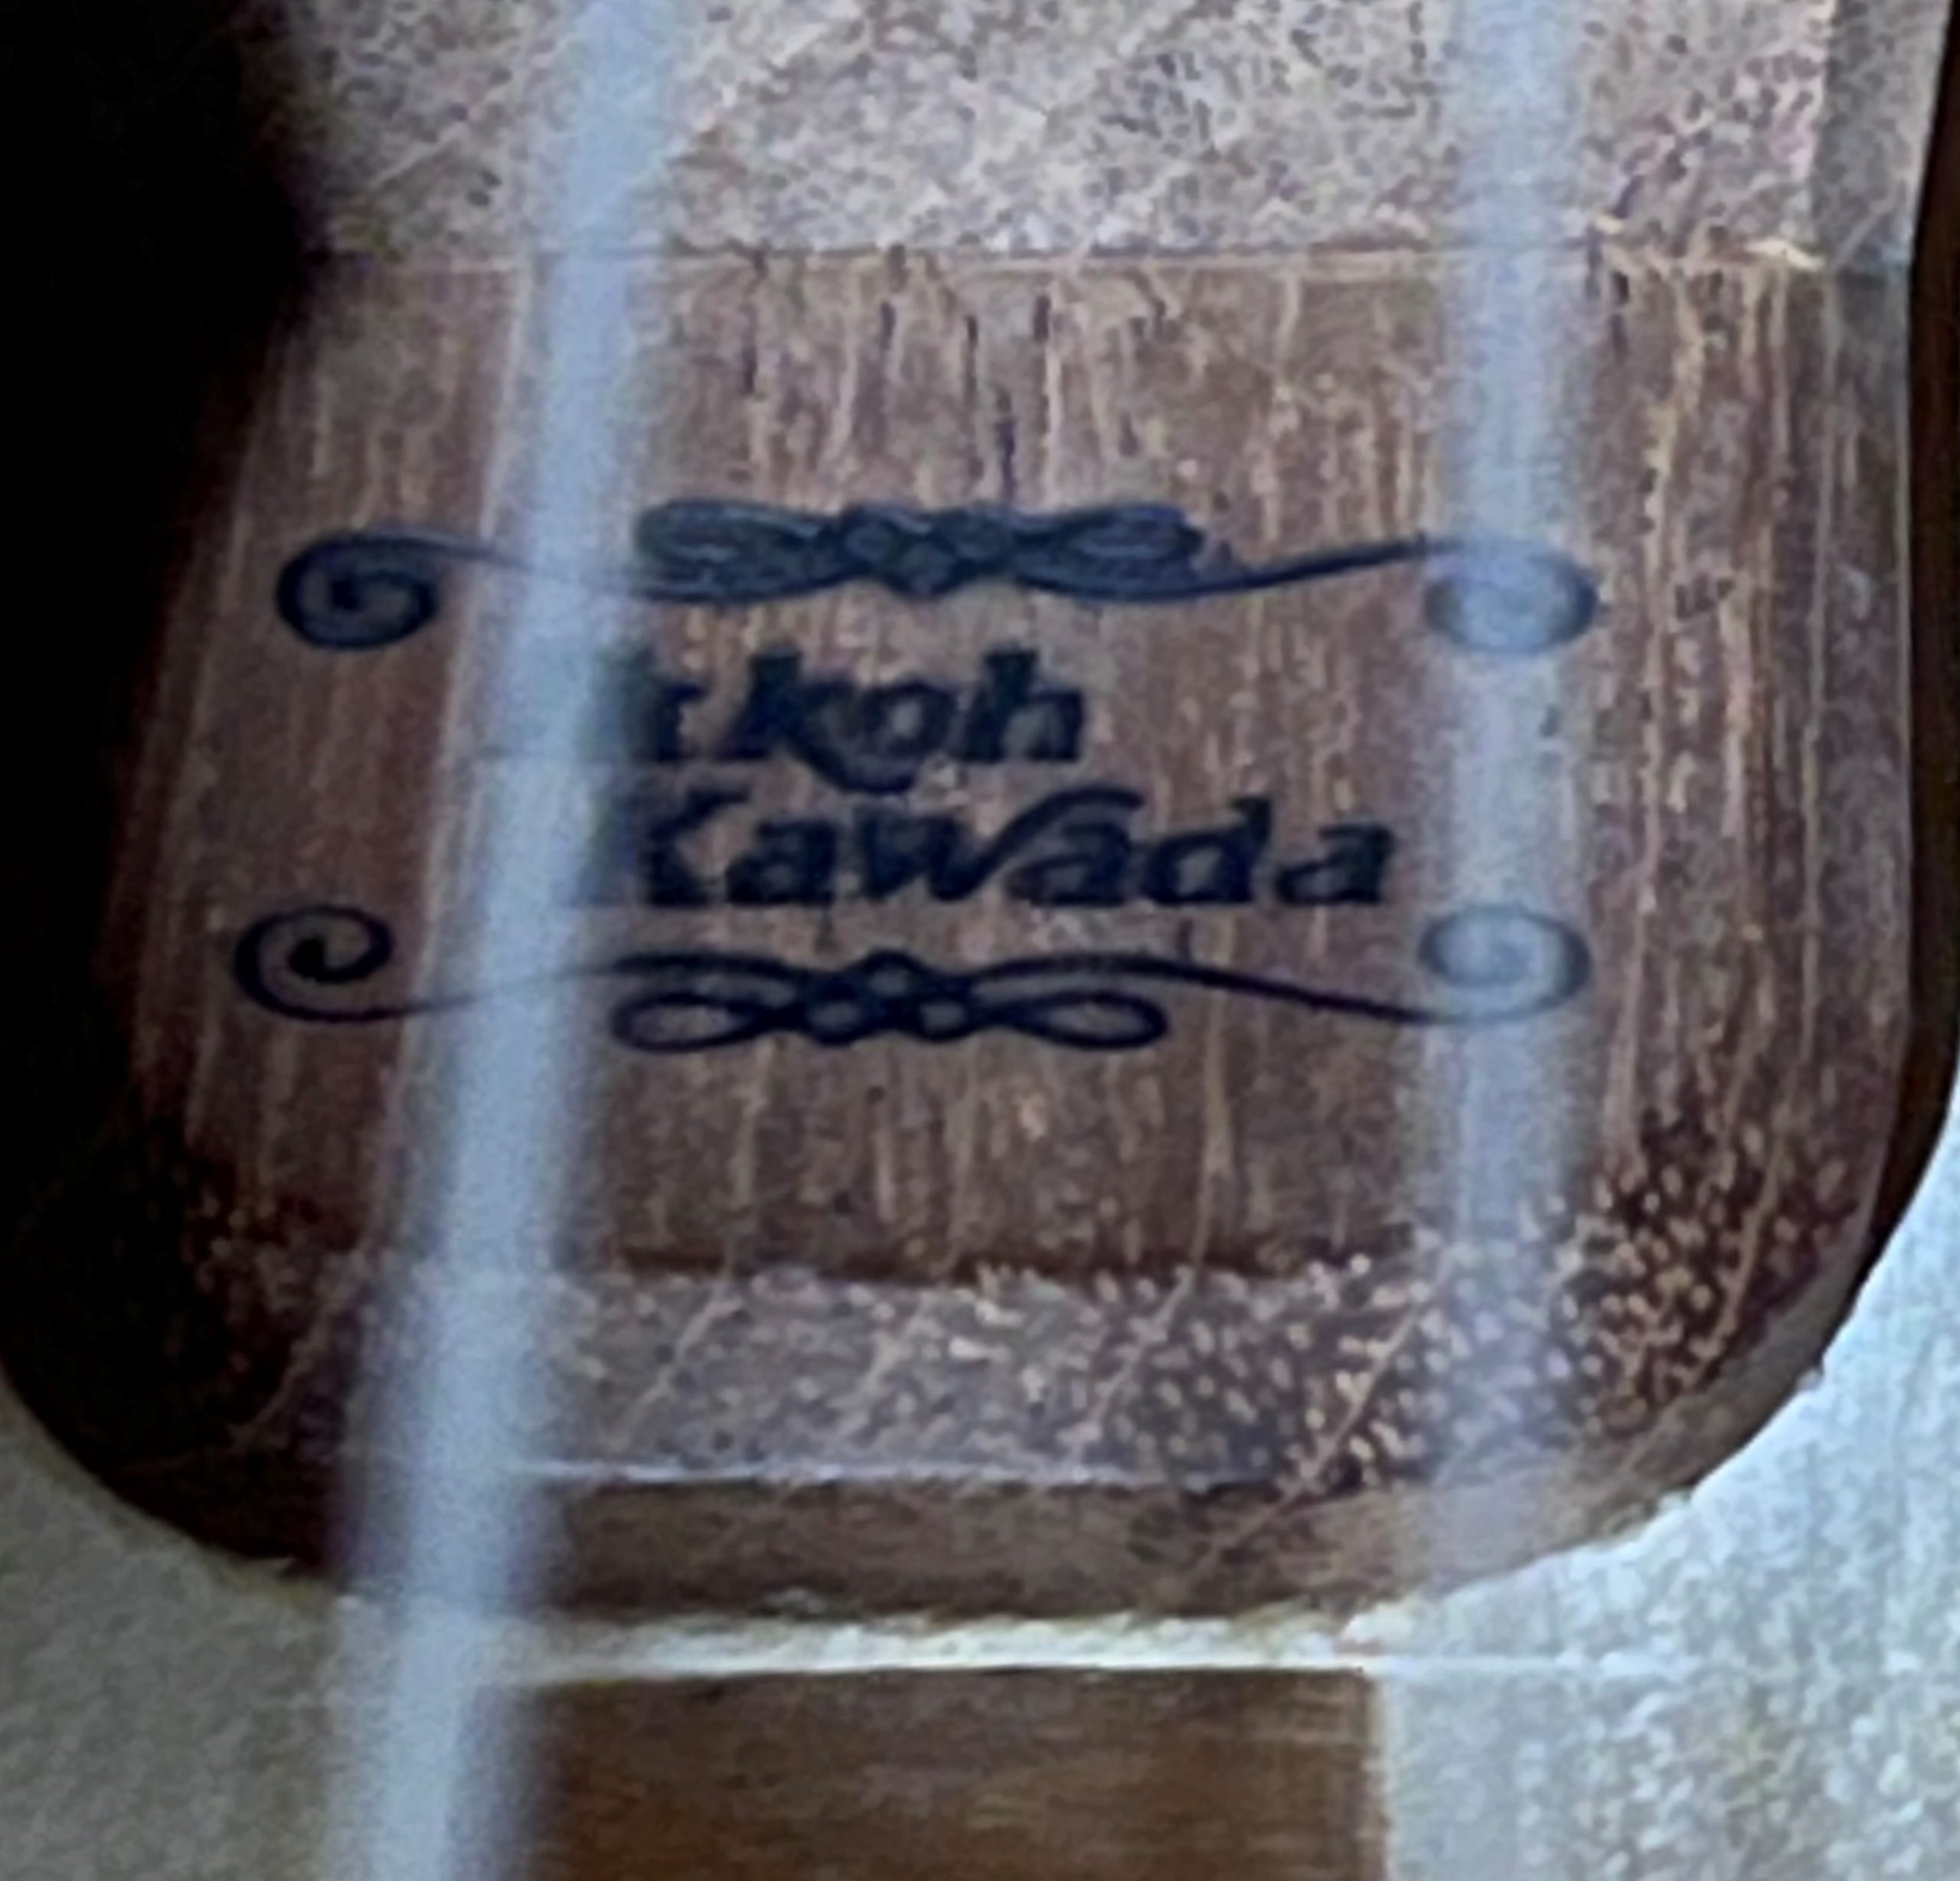 Ikkoh Kawada